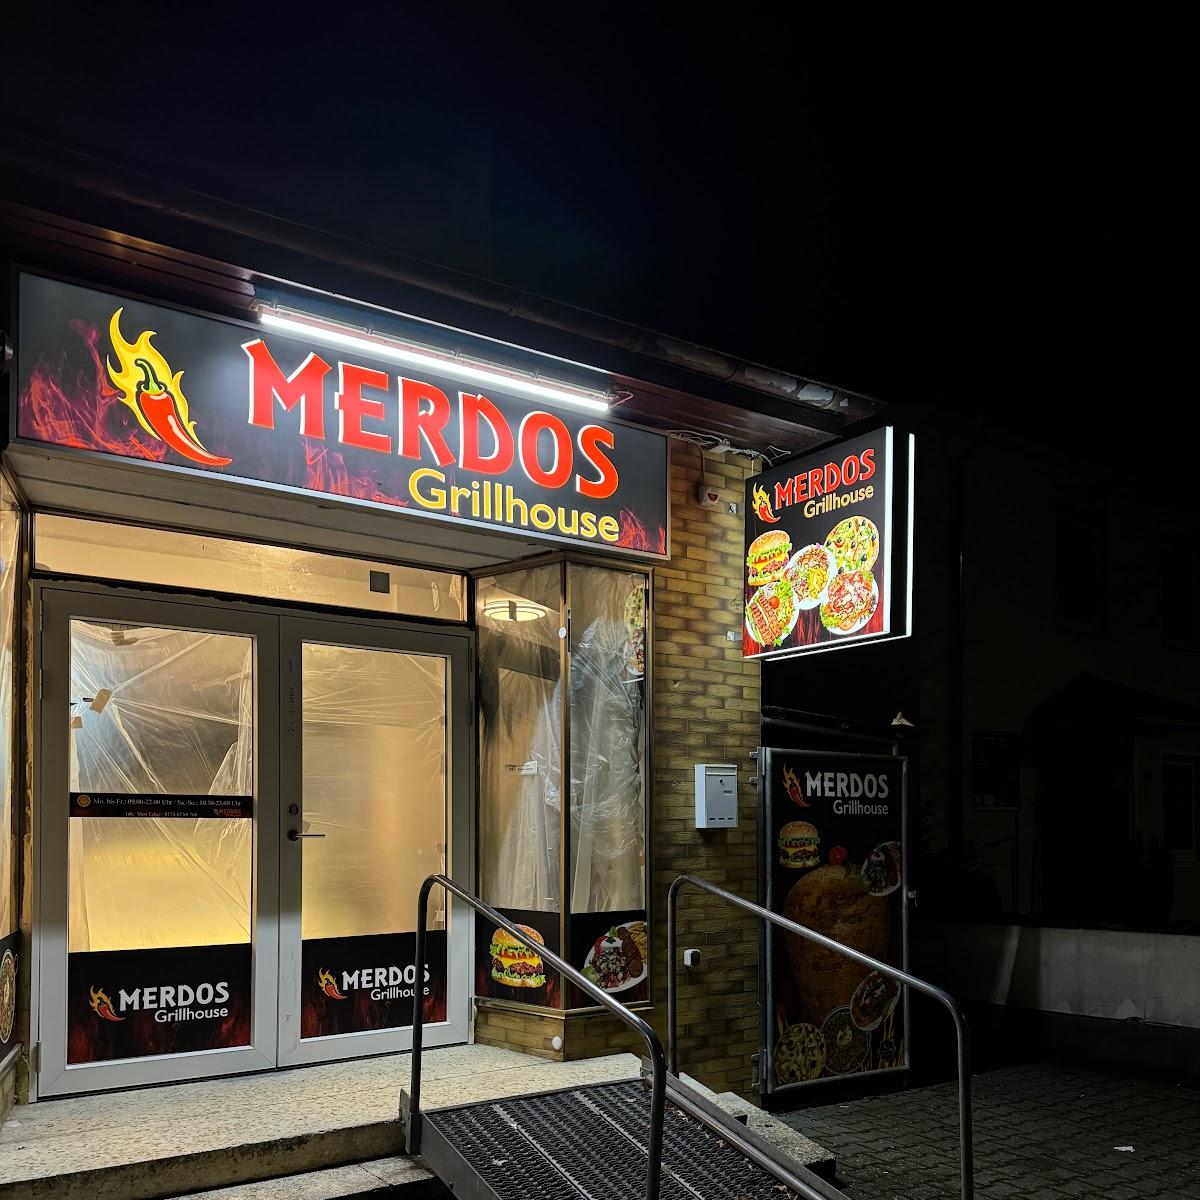 Restaurant "Merdos Grillhouse" in Nierstein